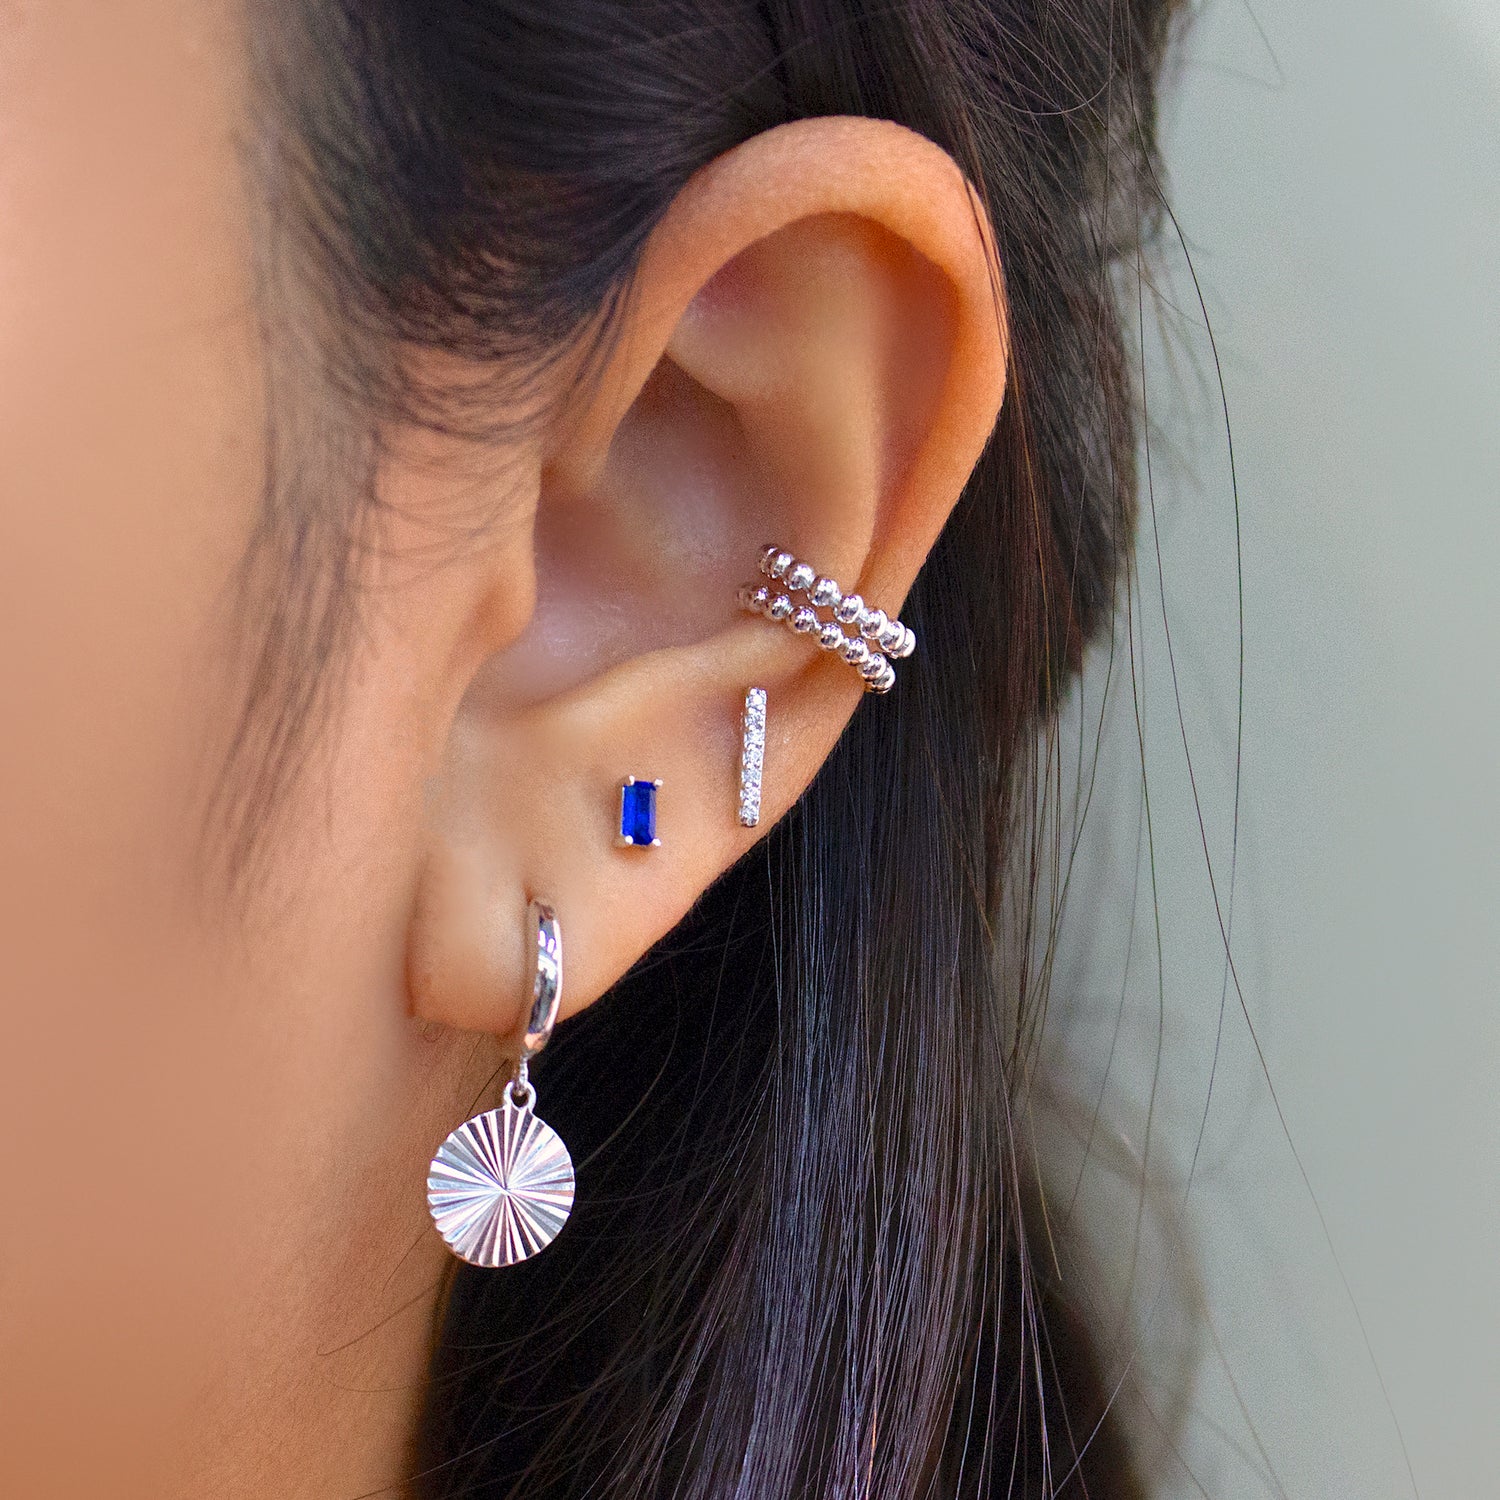 Trendy Earcuff Without Piercing Fake Cartilage Earrings for Women Charm CZ  Zircon Clip on Earrings Ear Cuff Jewelry - AliExpress